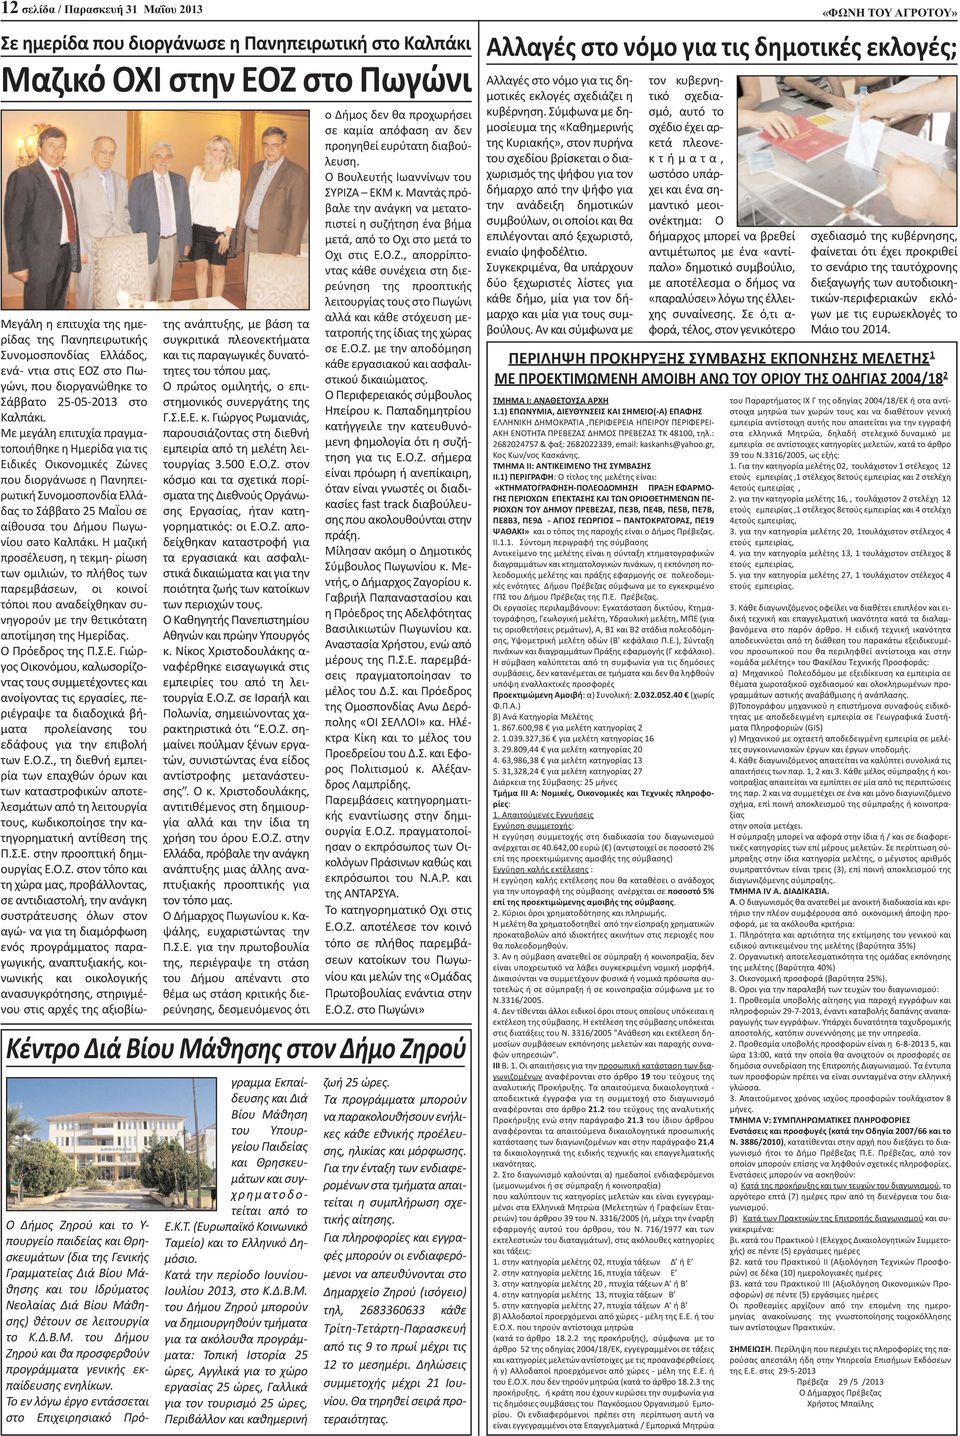 Με μεγάλη επιτυχία πραγματοποιήθηκε η Ημερίδα για τις Ειδικές Οικονομικές Ζώνες που διοργάνωσε η Πανηπειρωτική Συνομοσπονδία Ελλάδας το Σάββατο 25 ΜαΪου σε αίθουσα του Δήμου Πωγωνίου σaτο Καλπάκι.